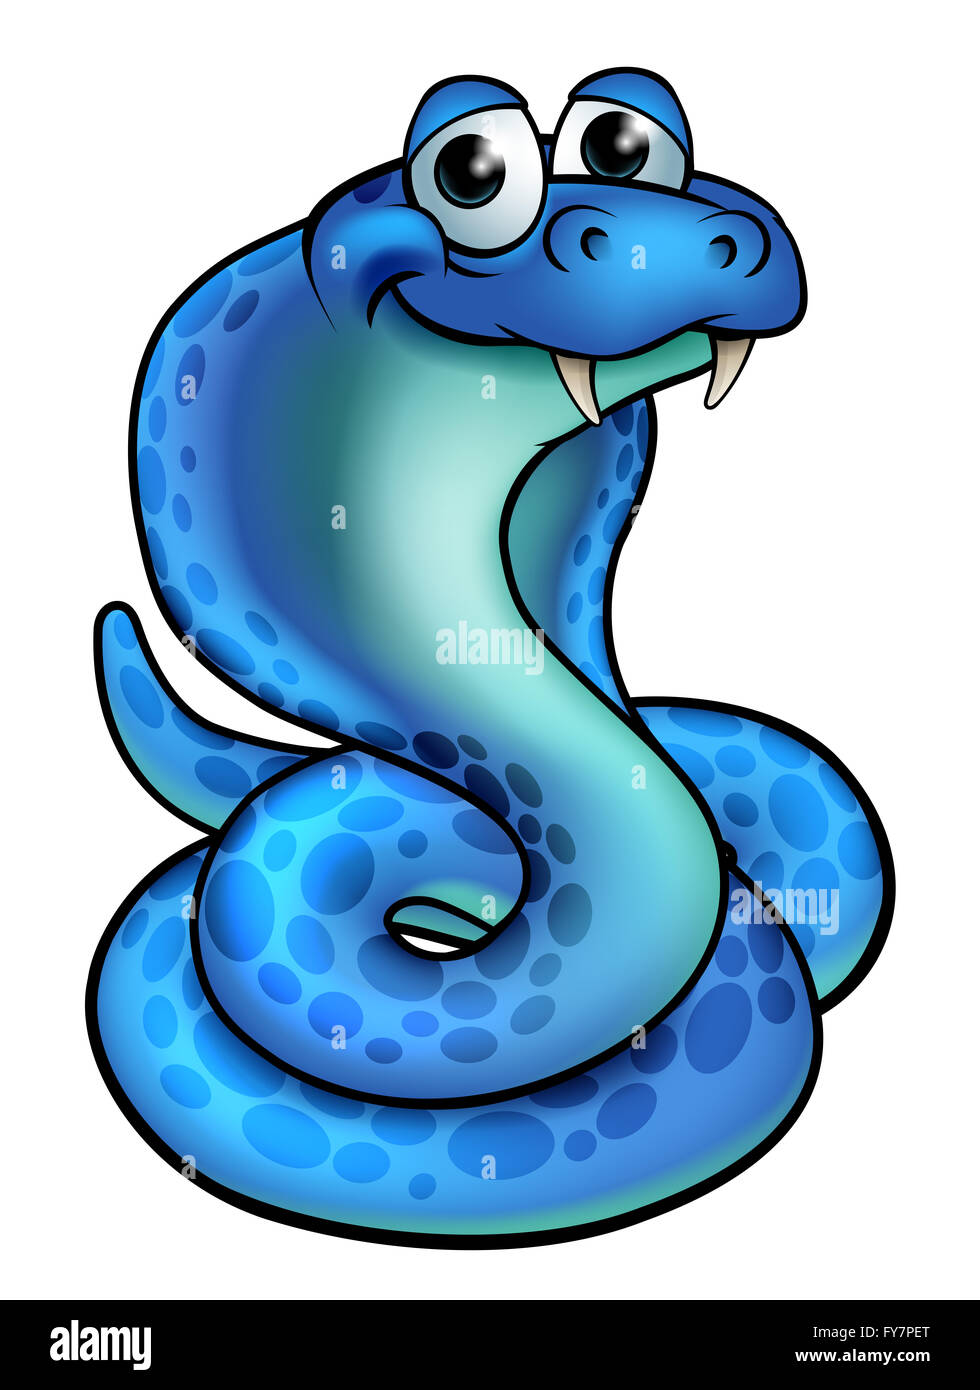 Eine freundliche blaue Cartoon Kobra Schlange Stockfoto